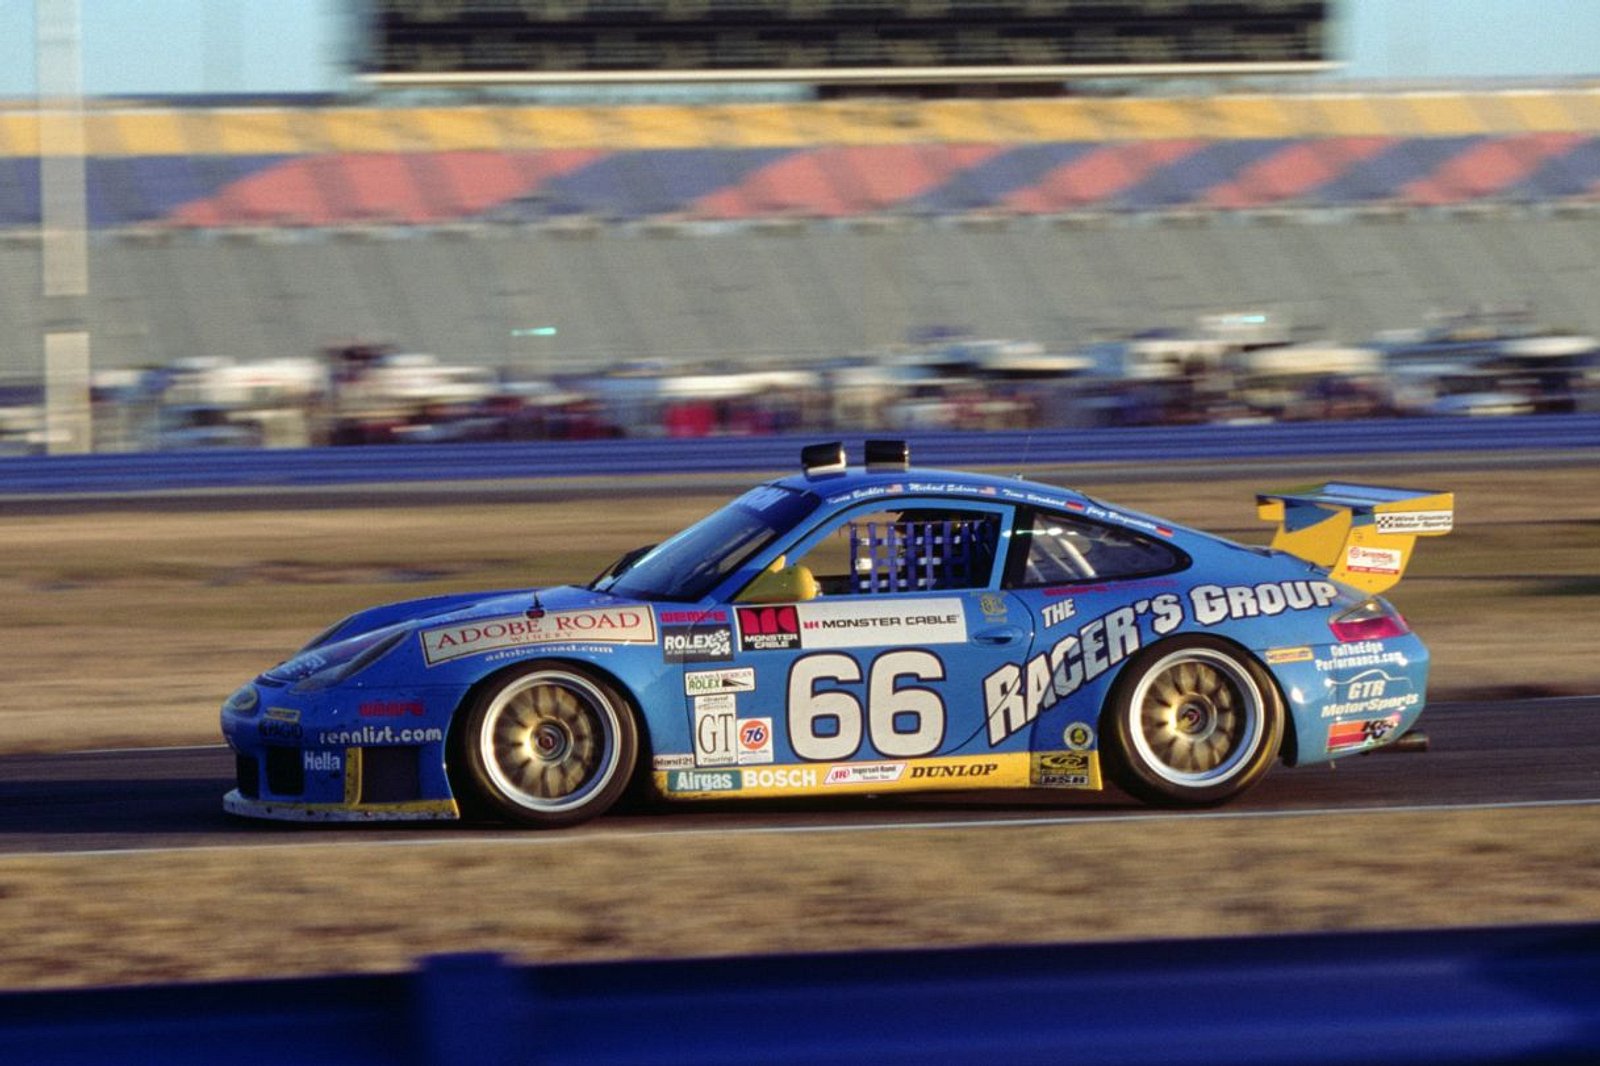 保时捷 911 GT3 RS 向击败 Daytona 原型车的 996 GT3 致敬-豁天游|活田酉 一个专门分享有趣的信息，激发人们的求知欲。